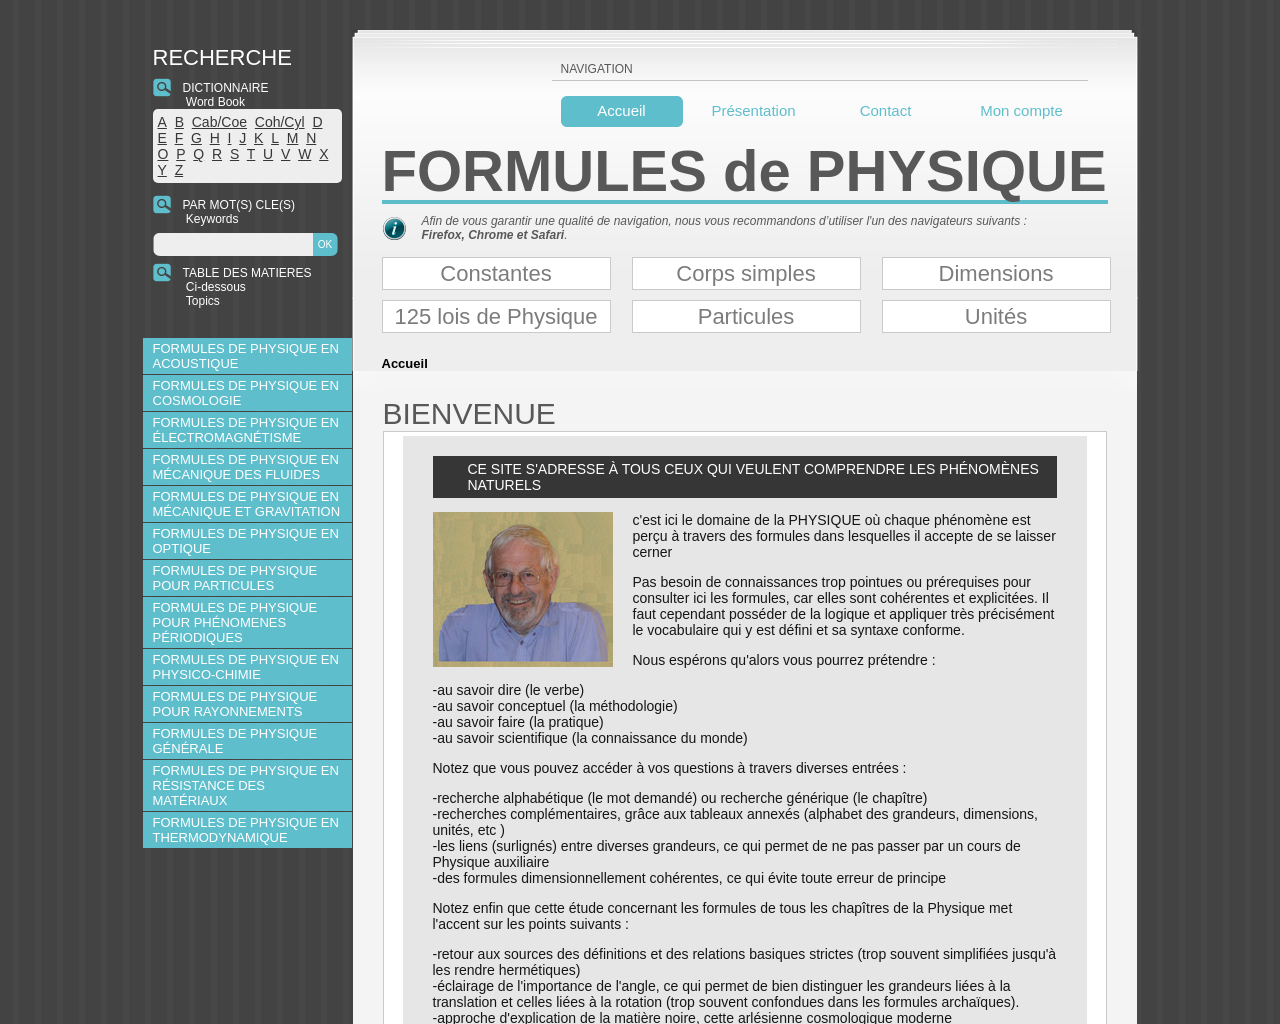 www.formules-physique.com